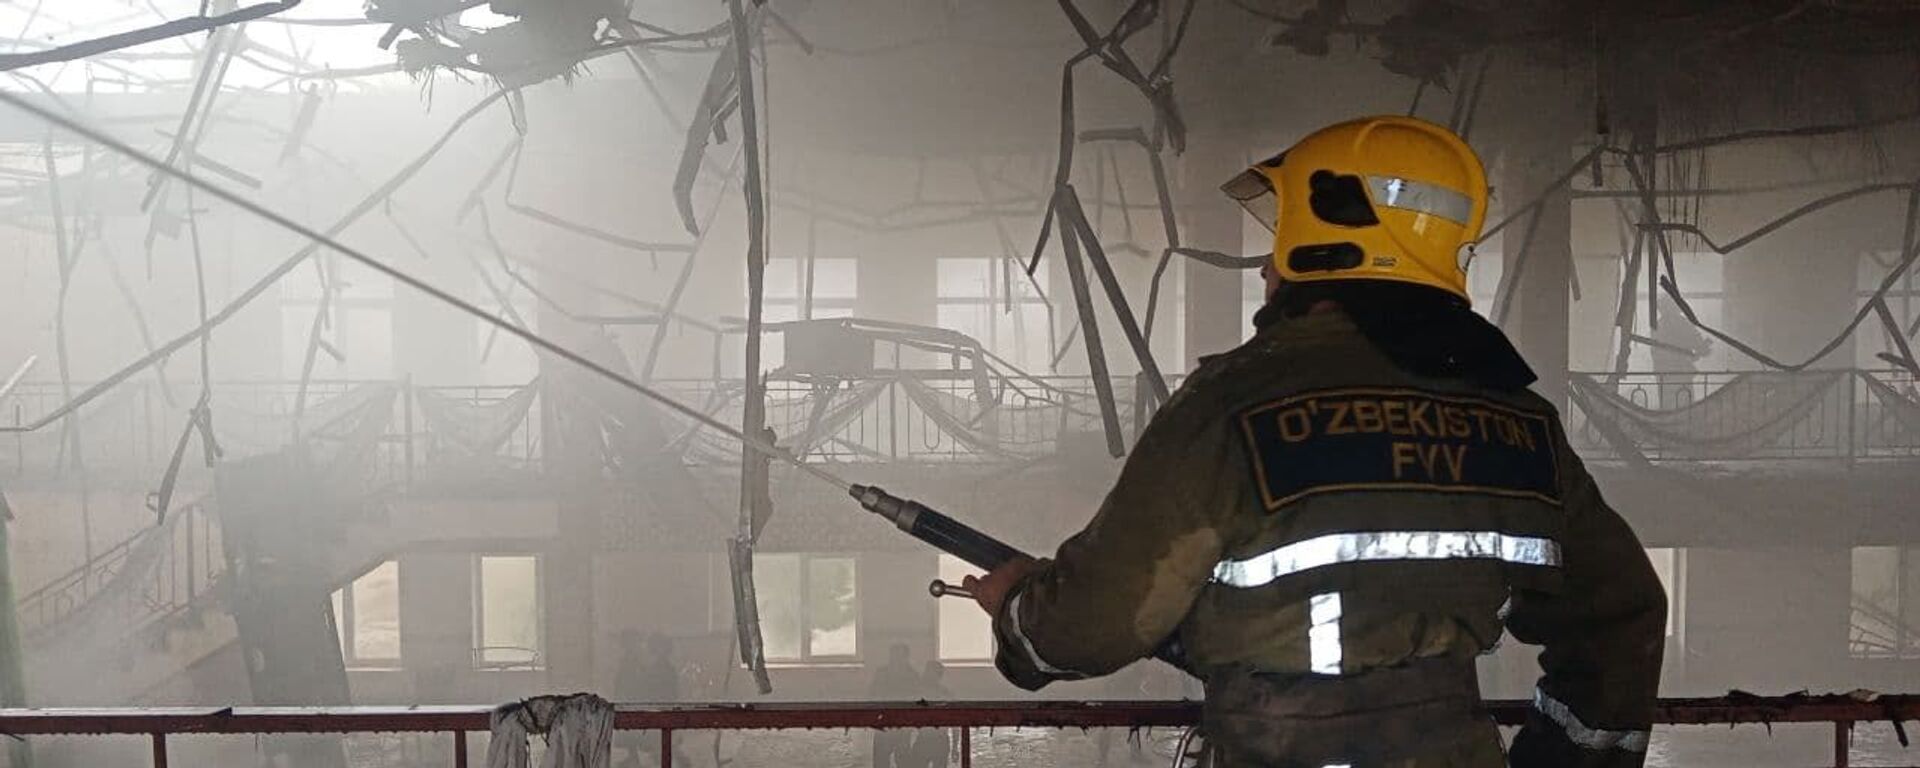 Спасатели МЧС ликвидировали пожар, вспыхнувший в одном из ресторанов Самаркандской области - Sputnik Ўзбекистон, 1920, 26.07.2021